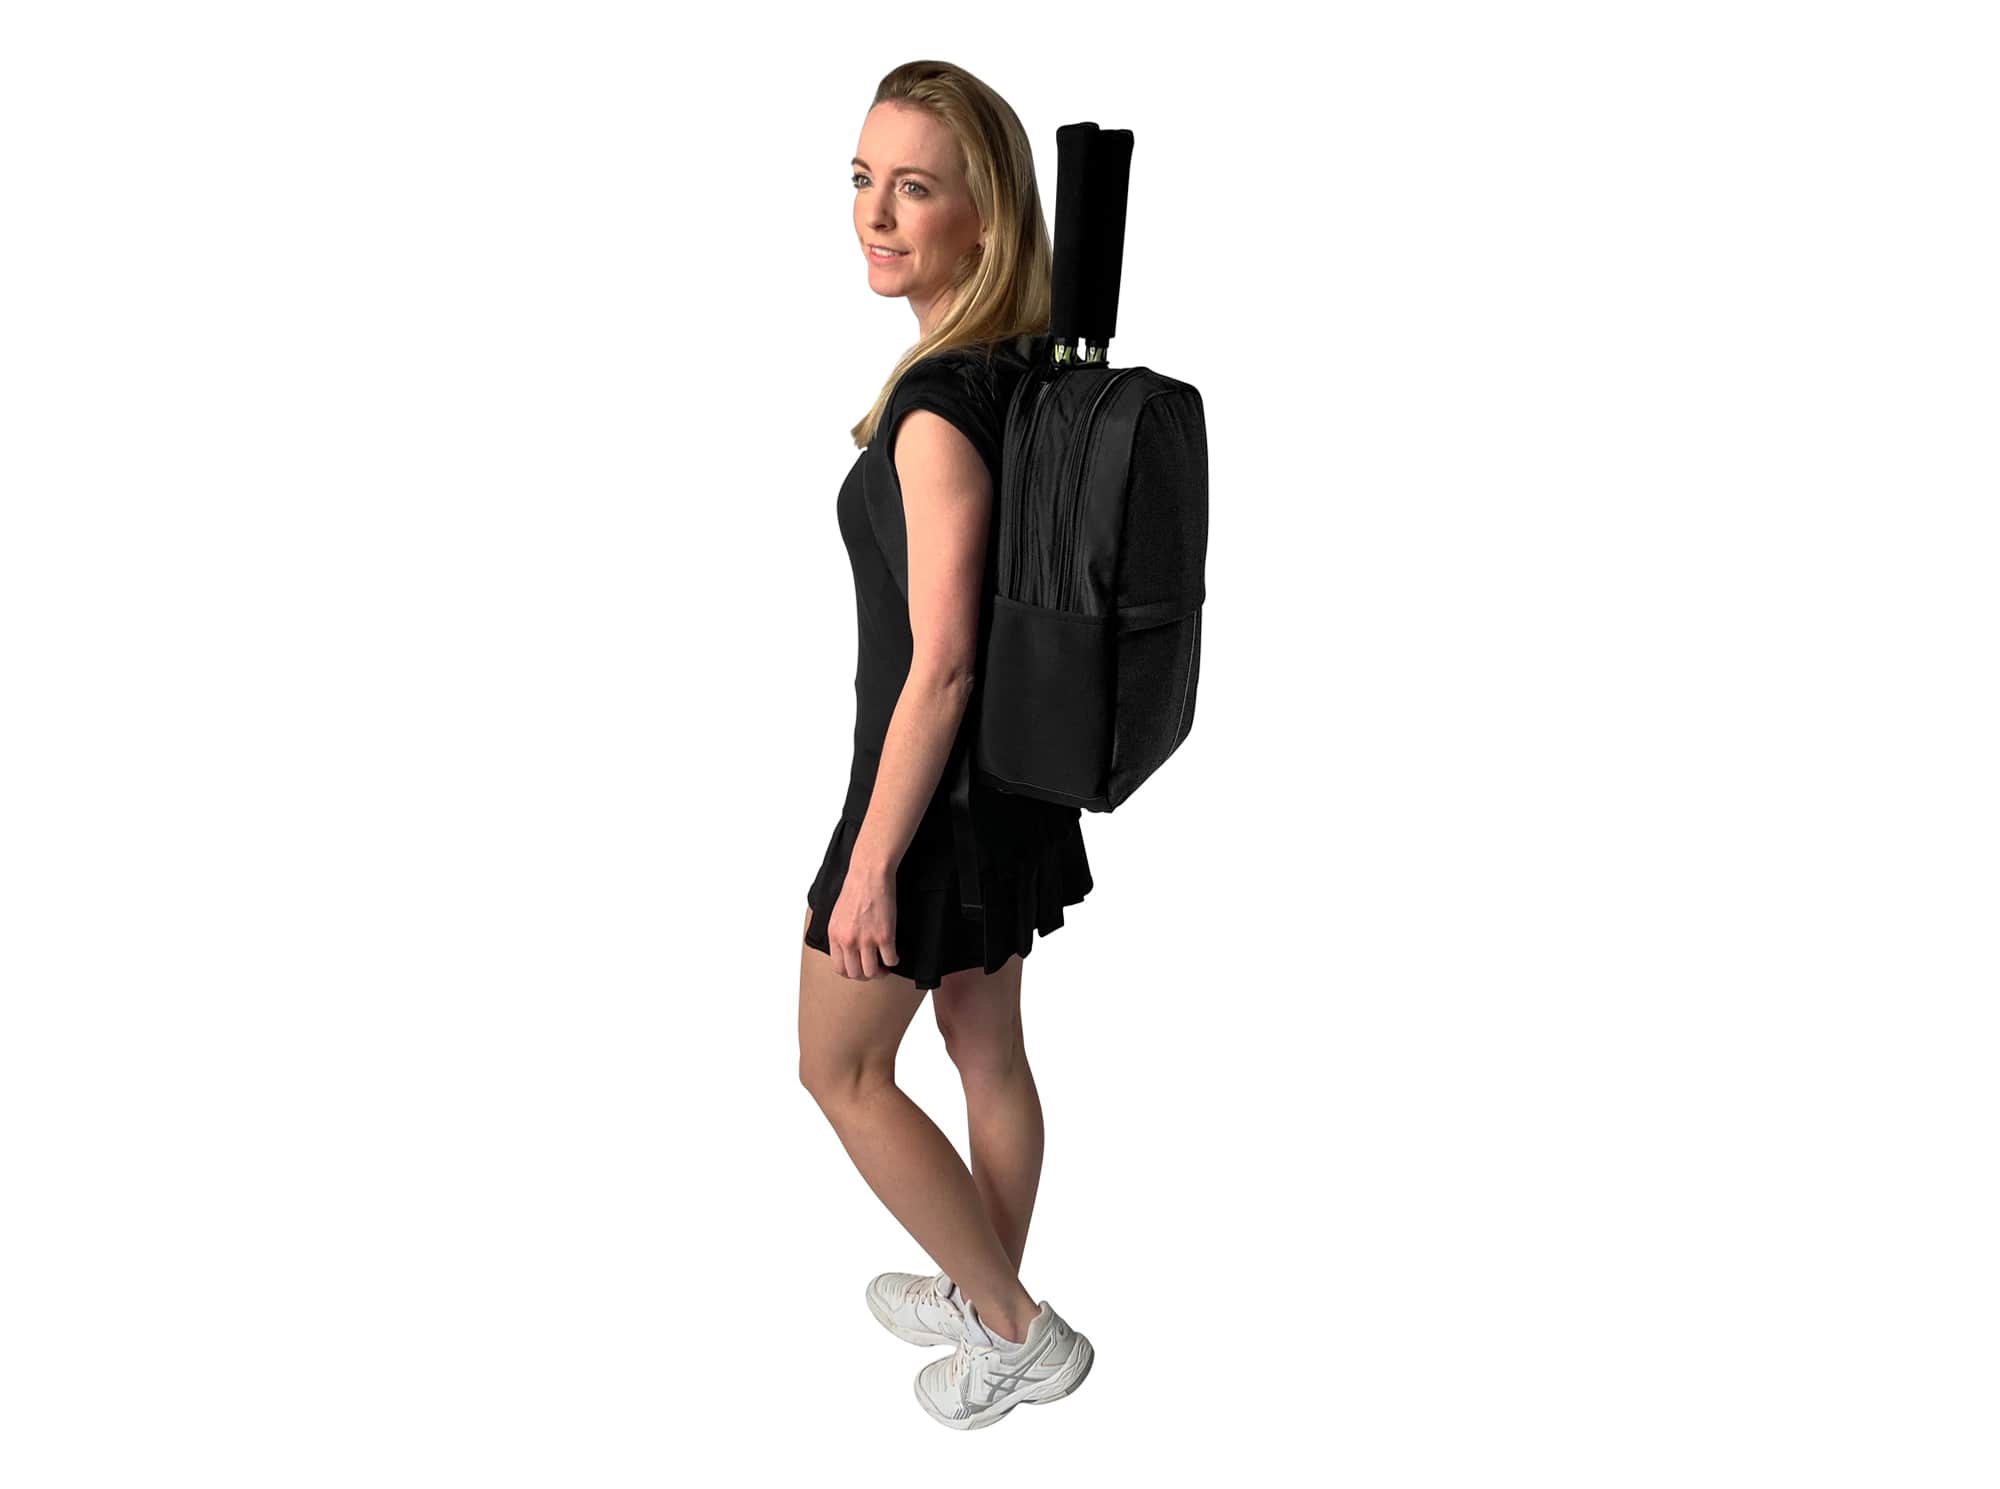 Epirus Borderless Backpack Black Tennis Bag On Sporty Female Model